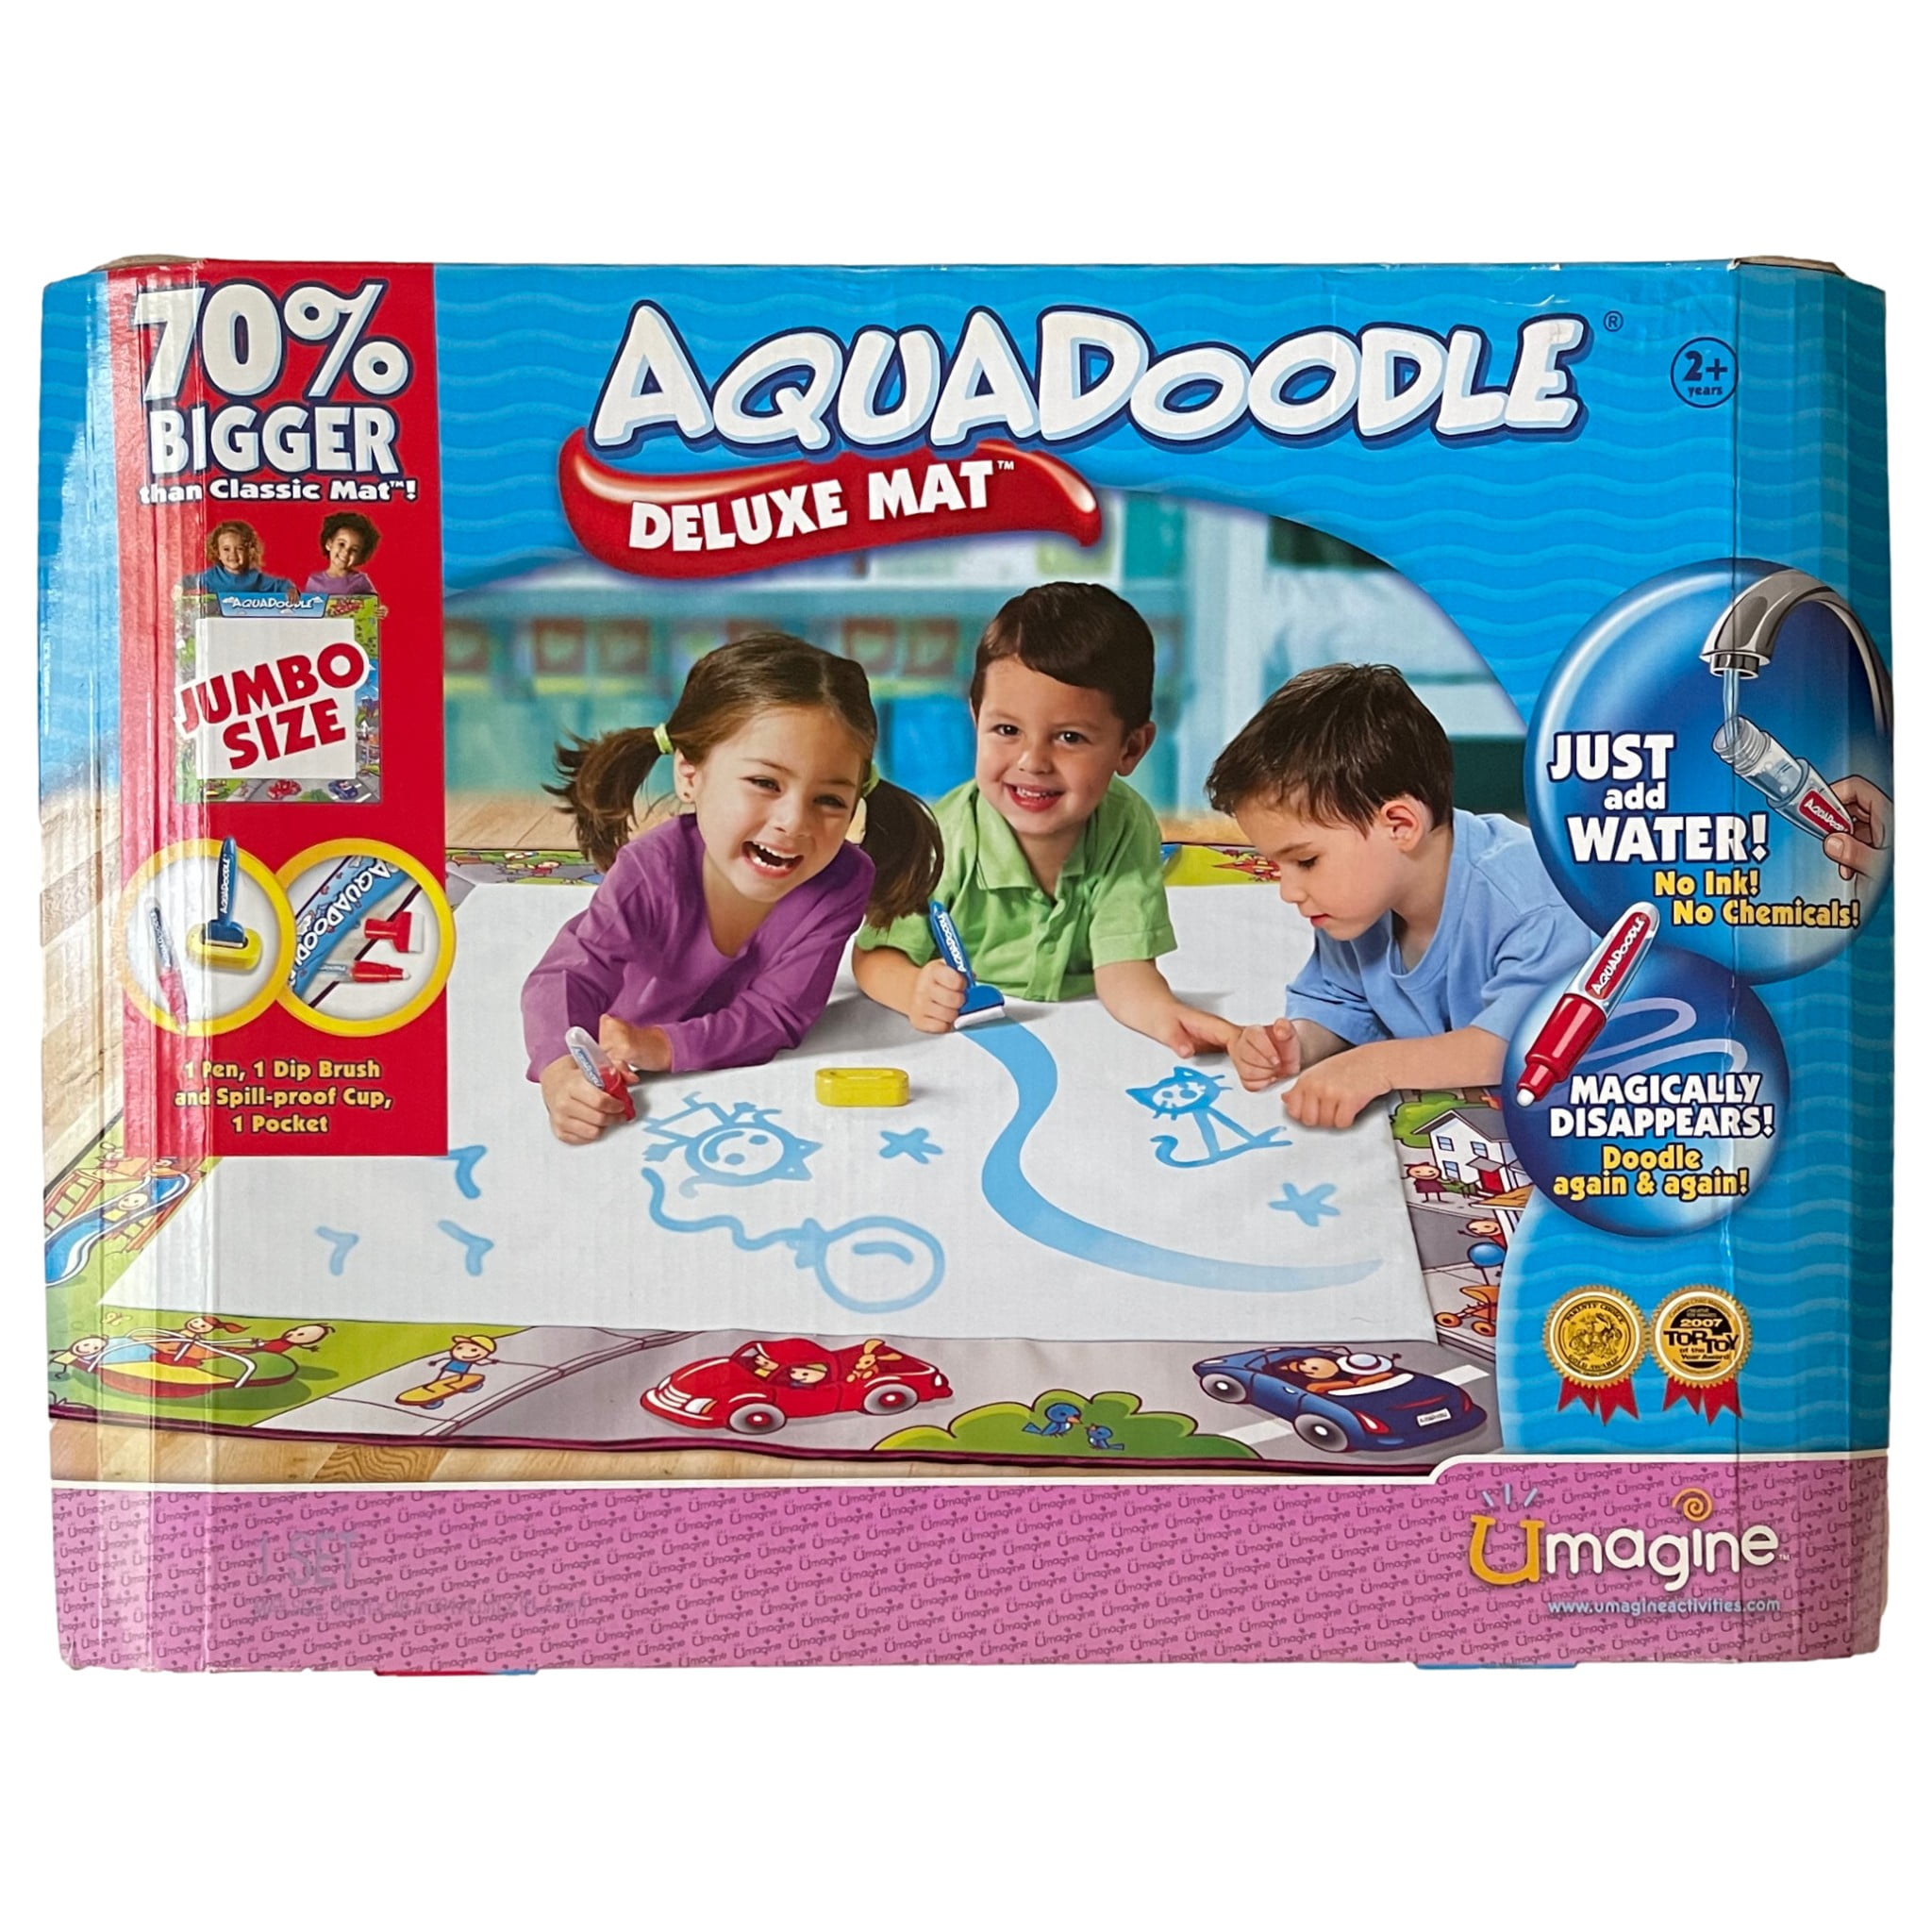 AquaDoodle - Draw N Doodle™ 